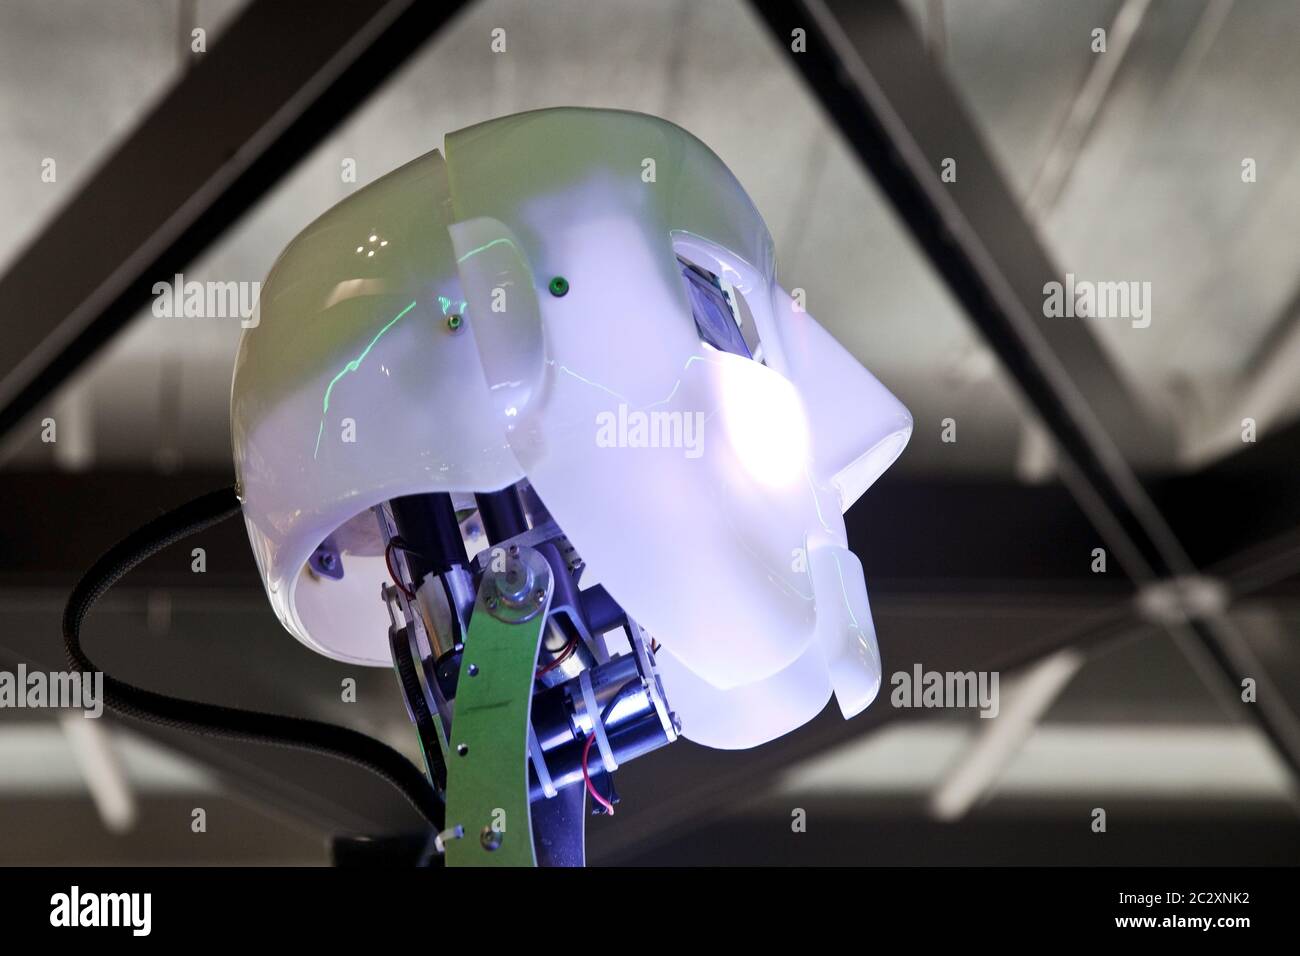 head of humanoid robot RoboThespian, Germany Stock Photo